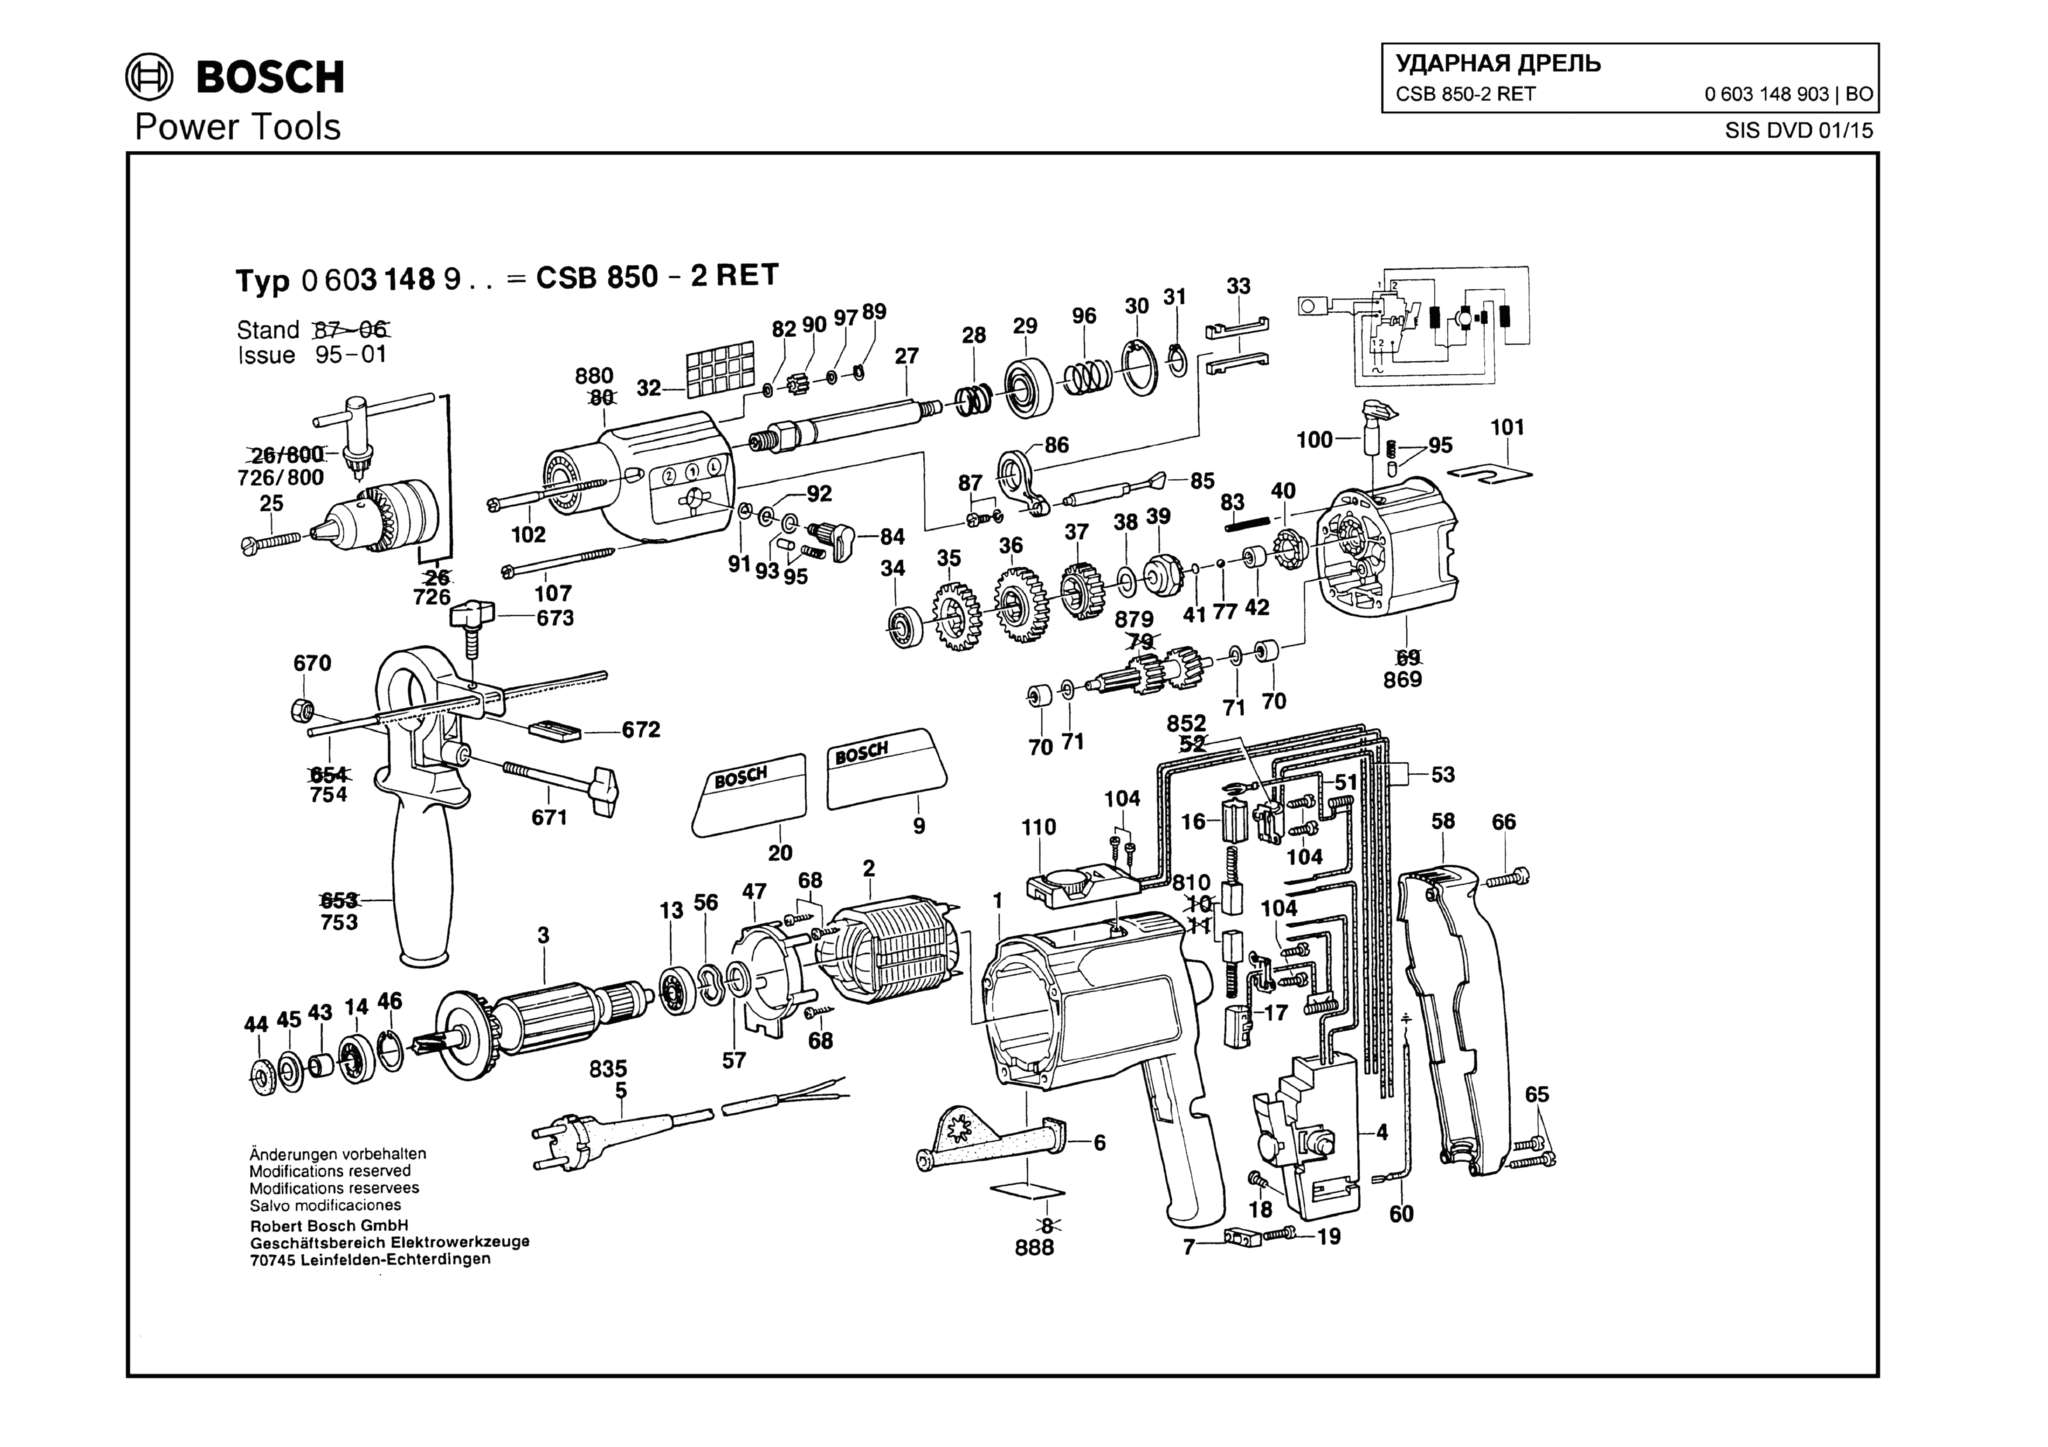 Запчасти, схема и деталировка Bosch CSB 850-2 RET (ТИП 0603148903)